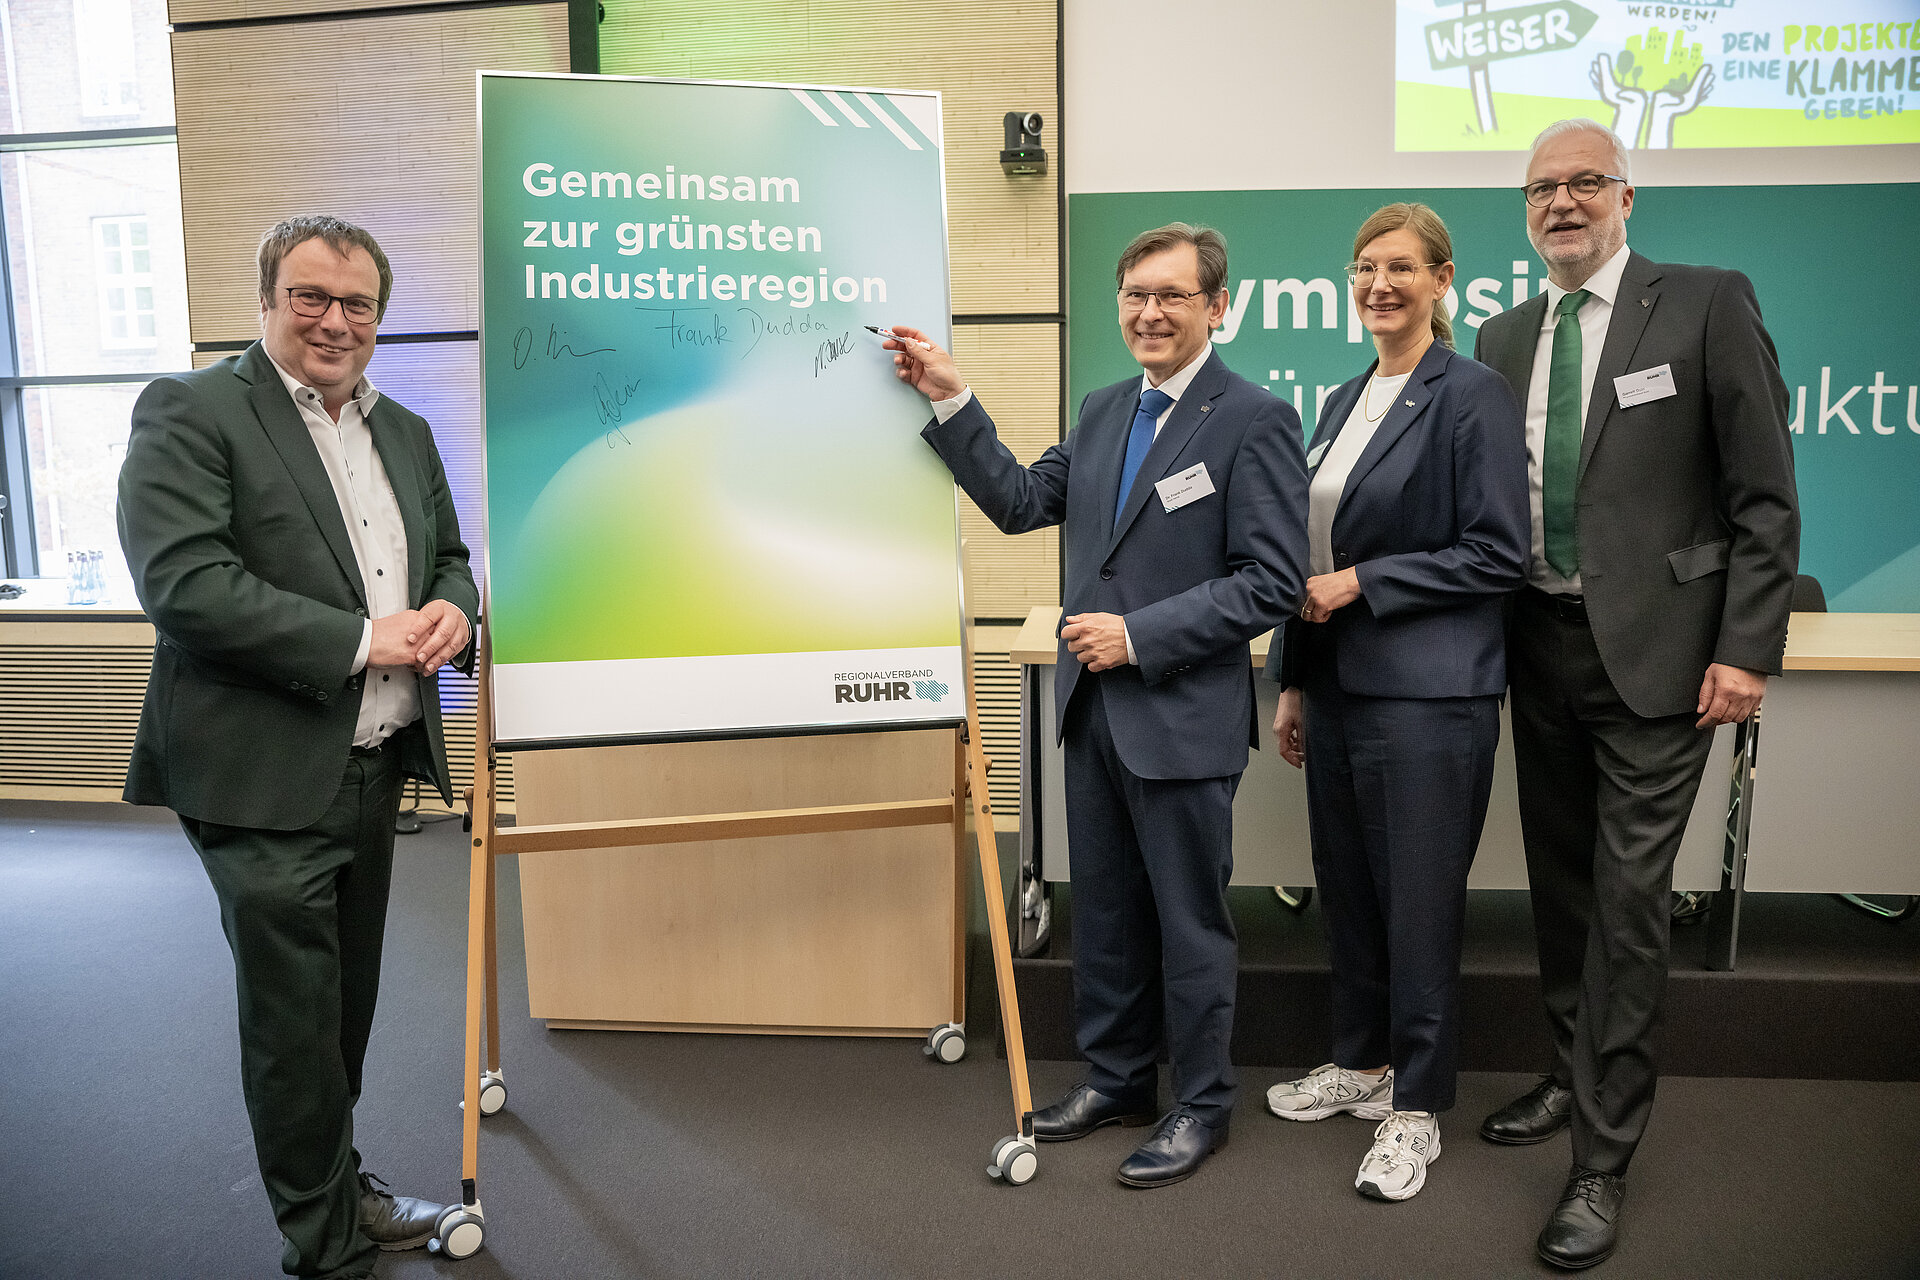 Gruppenfoto mit Oliver Krischer (NRW Umweltministerium), Dr. Frank Dudda (Ruhrparlament), Nina Frense und Garrelt Duin (RVR)